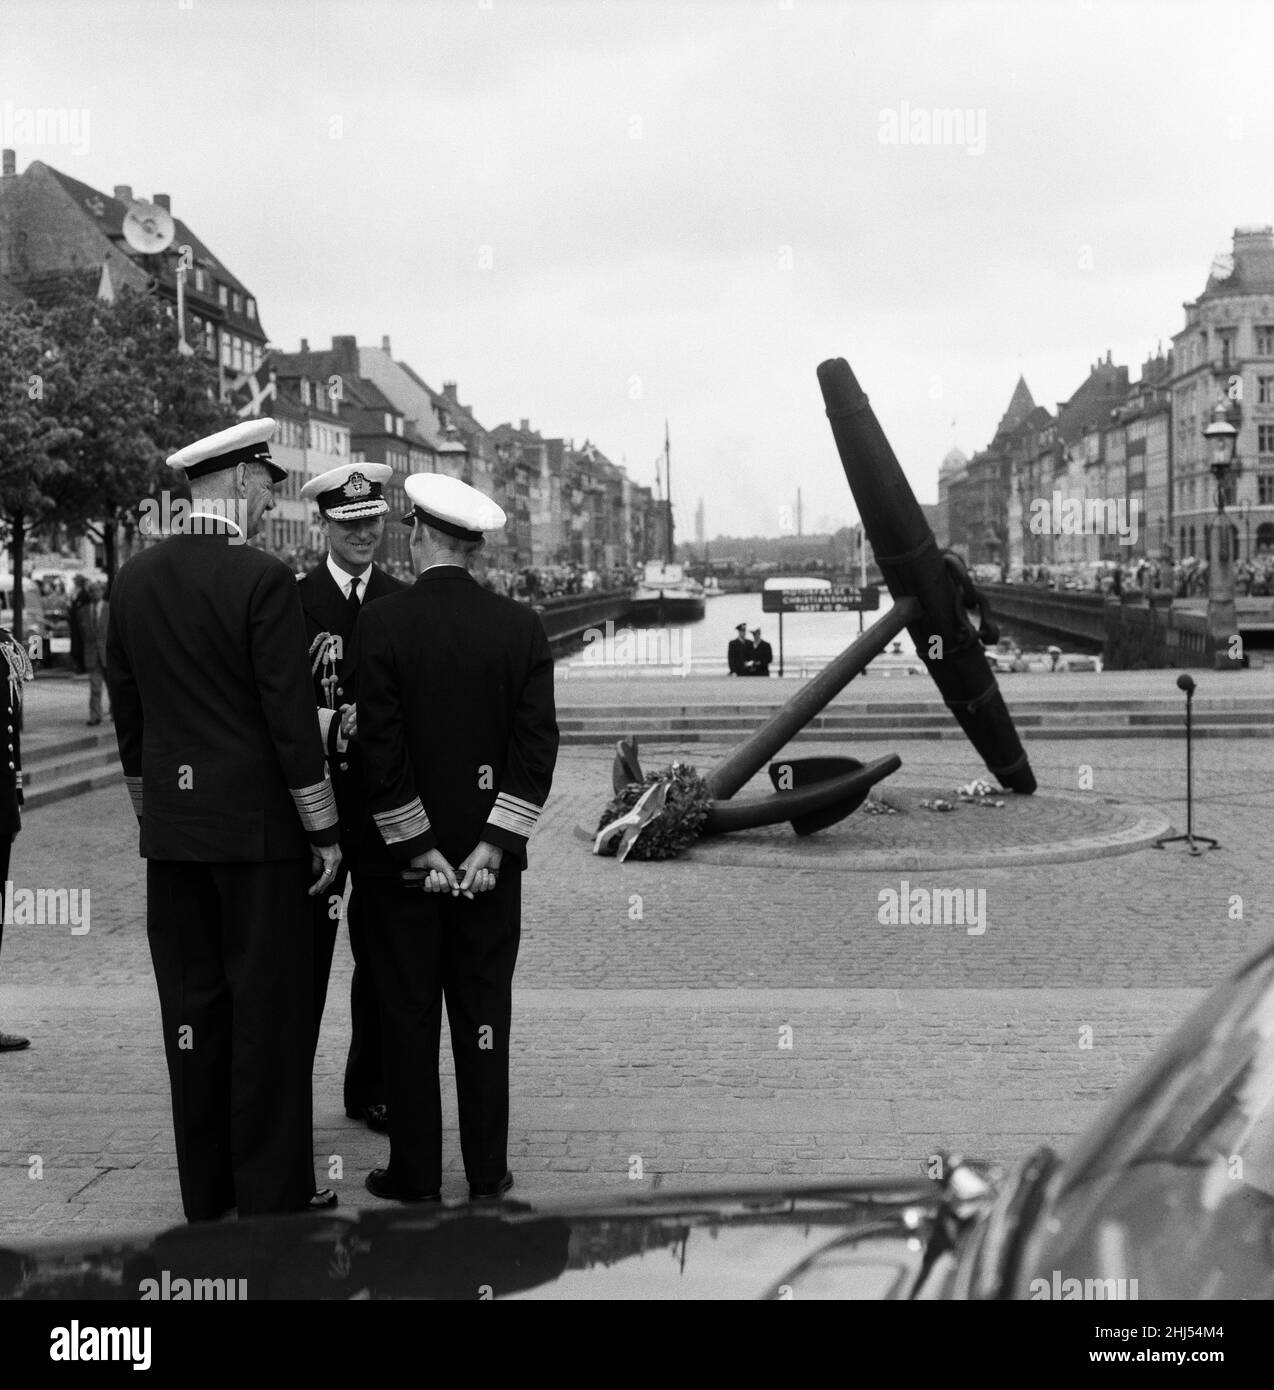 Königin Elizabeth II. Und Prinz Philip, Herzog von Edinburgh, besuchen Dänemark. Prinz Philip im Gedenkanker am Ende von Nyhavn, Kopenhagen. 23rd Mai 1957. Stockfoto